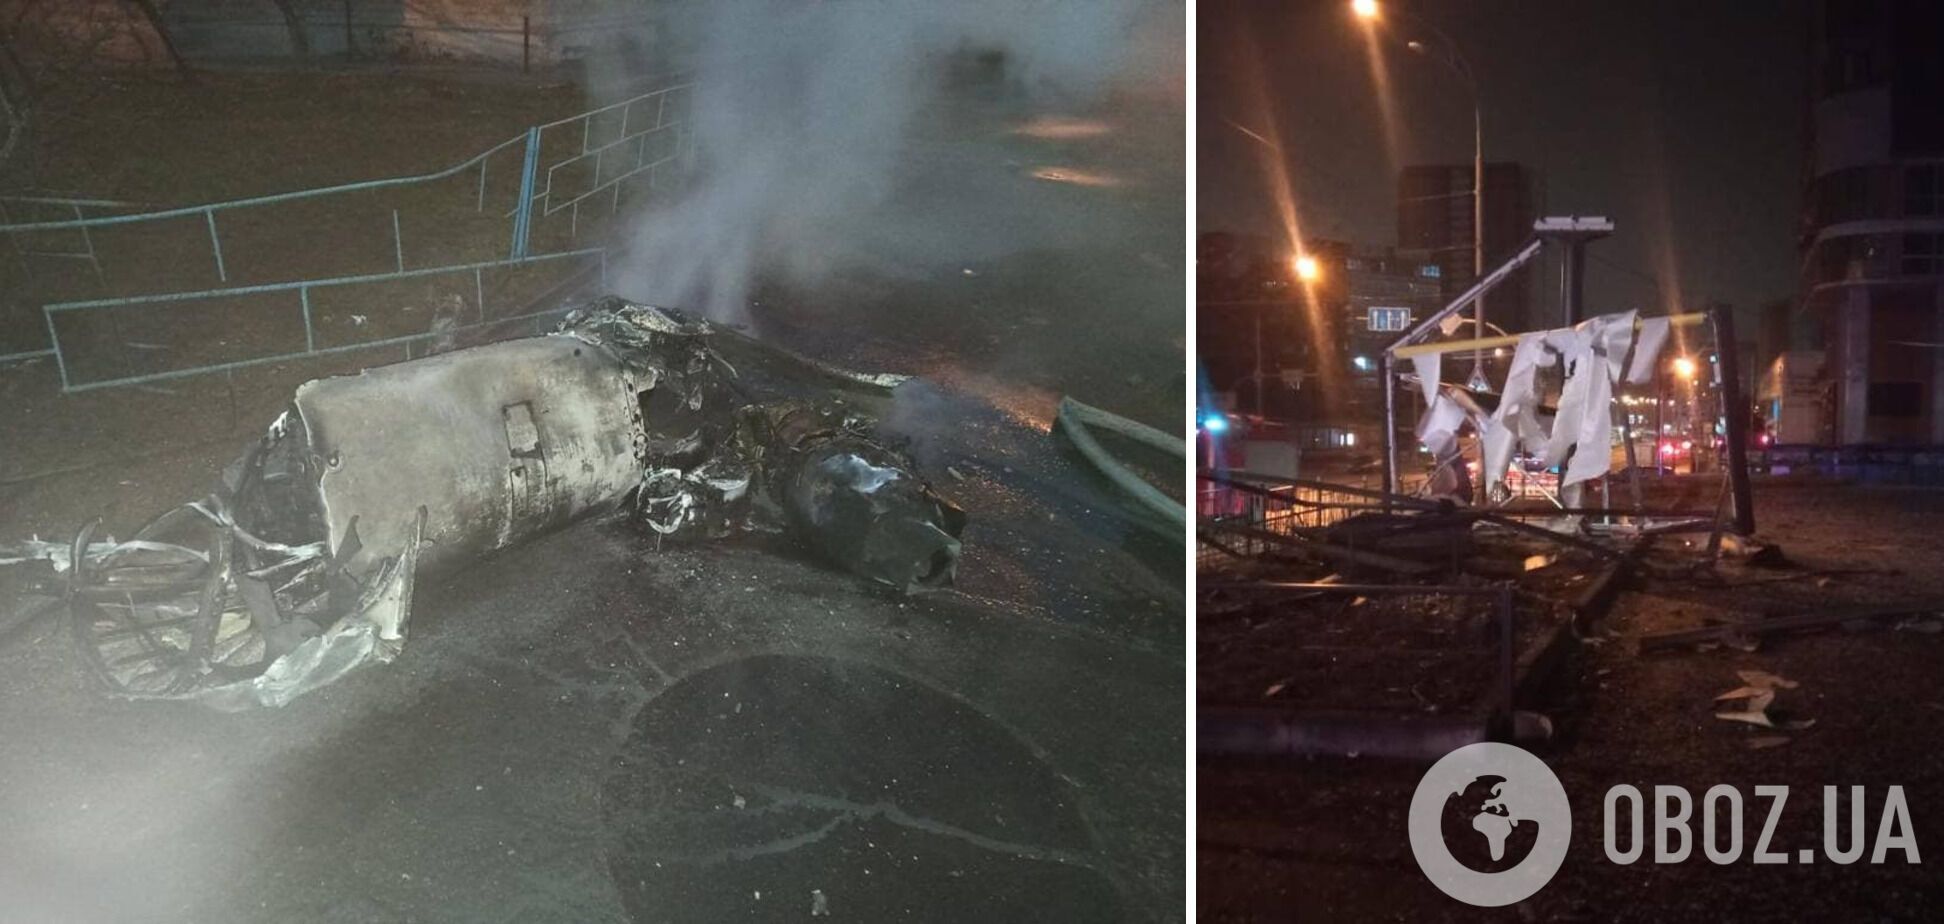 В Оболонском районе Киева пожарные гасили предмет, похожий на БПЛА